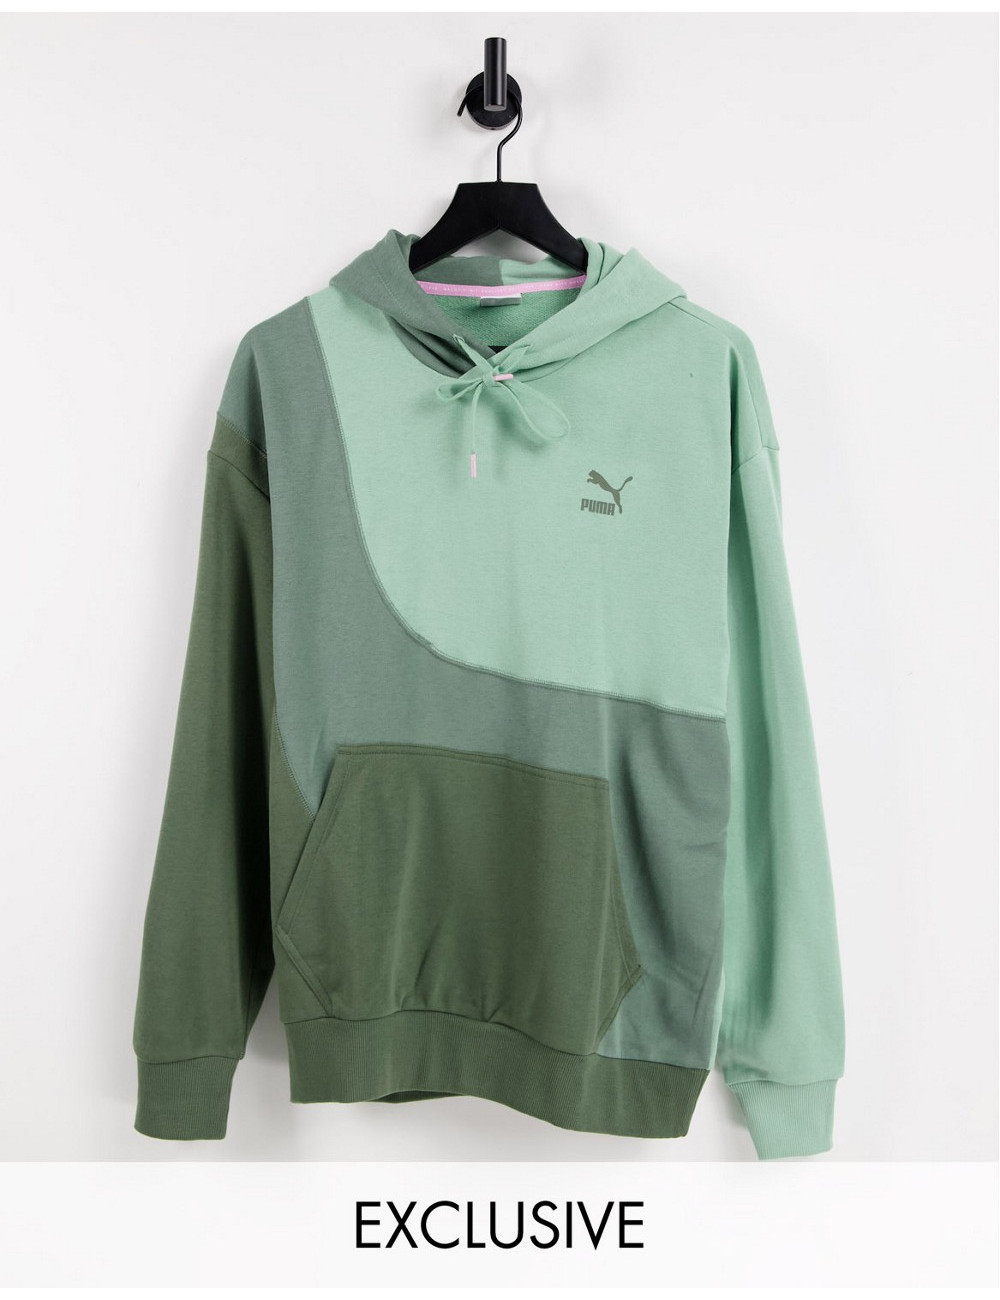 Puma convey hoodie in green...